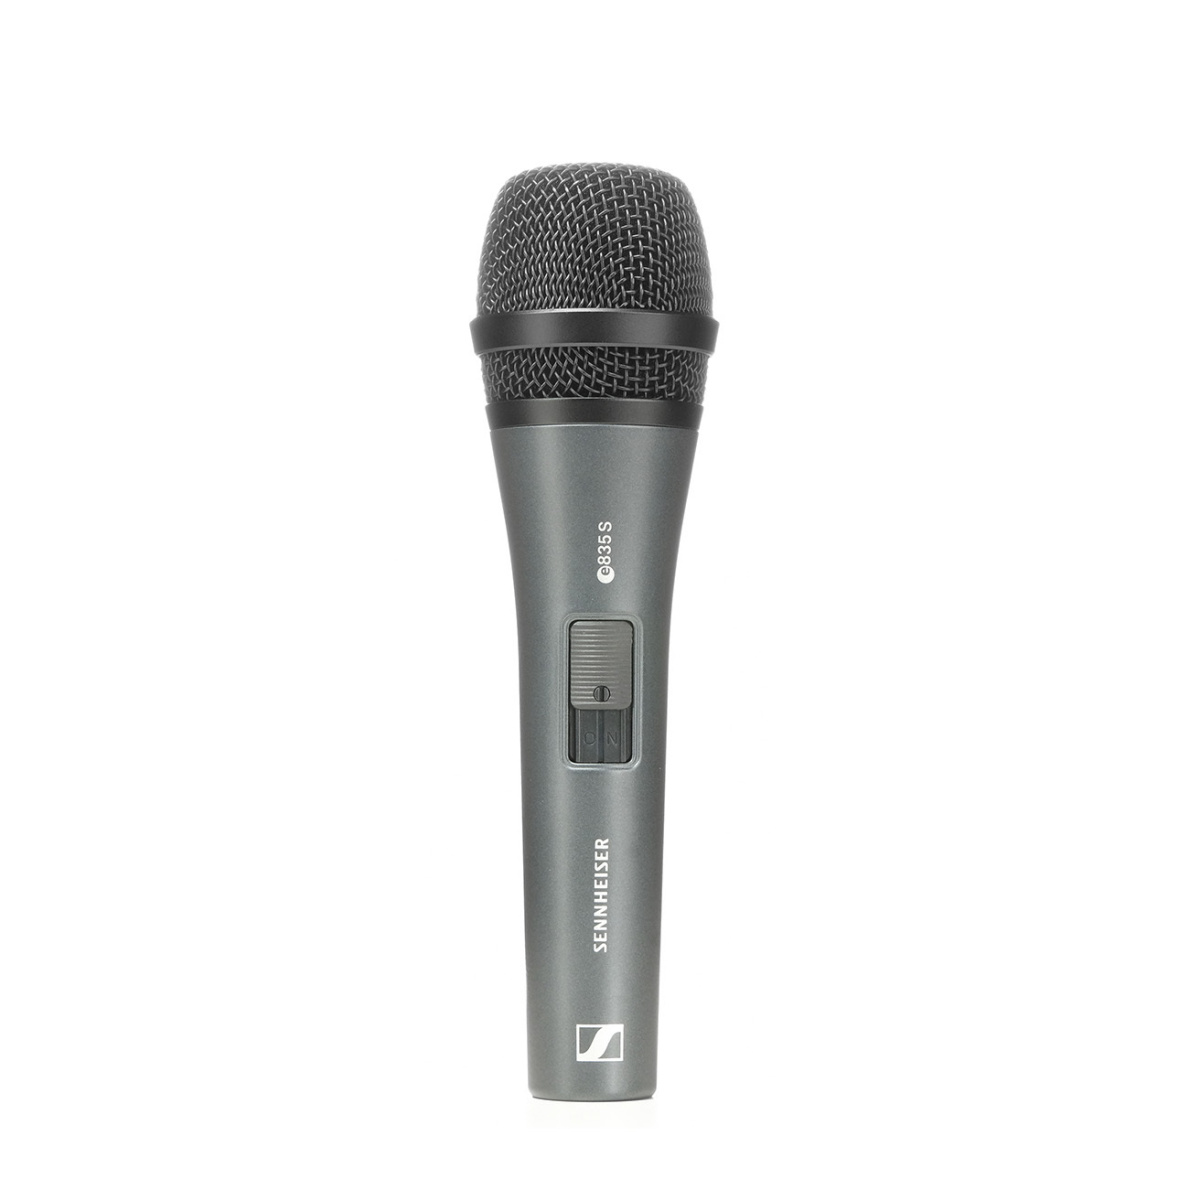 SENNHEISER E 835 S - динамический вокальный микрофон с выключателем , кардиоида 40 - 16000 Гц, 350 О купить в prostore.me